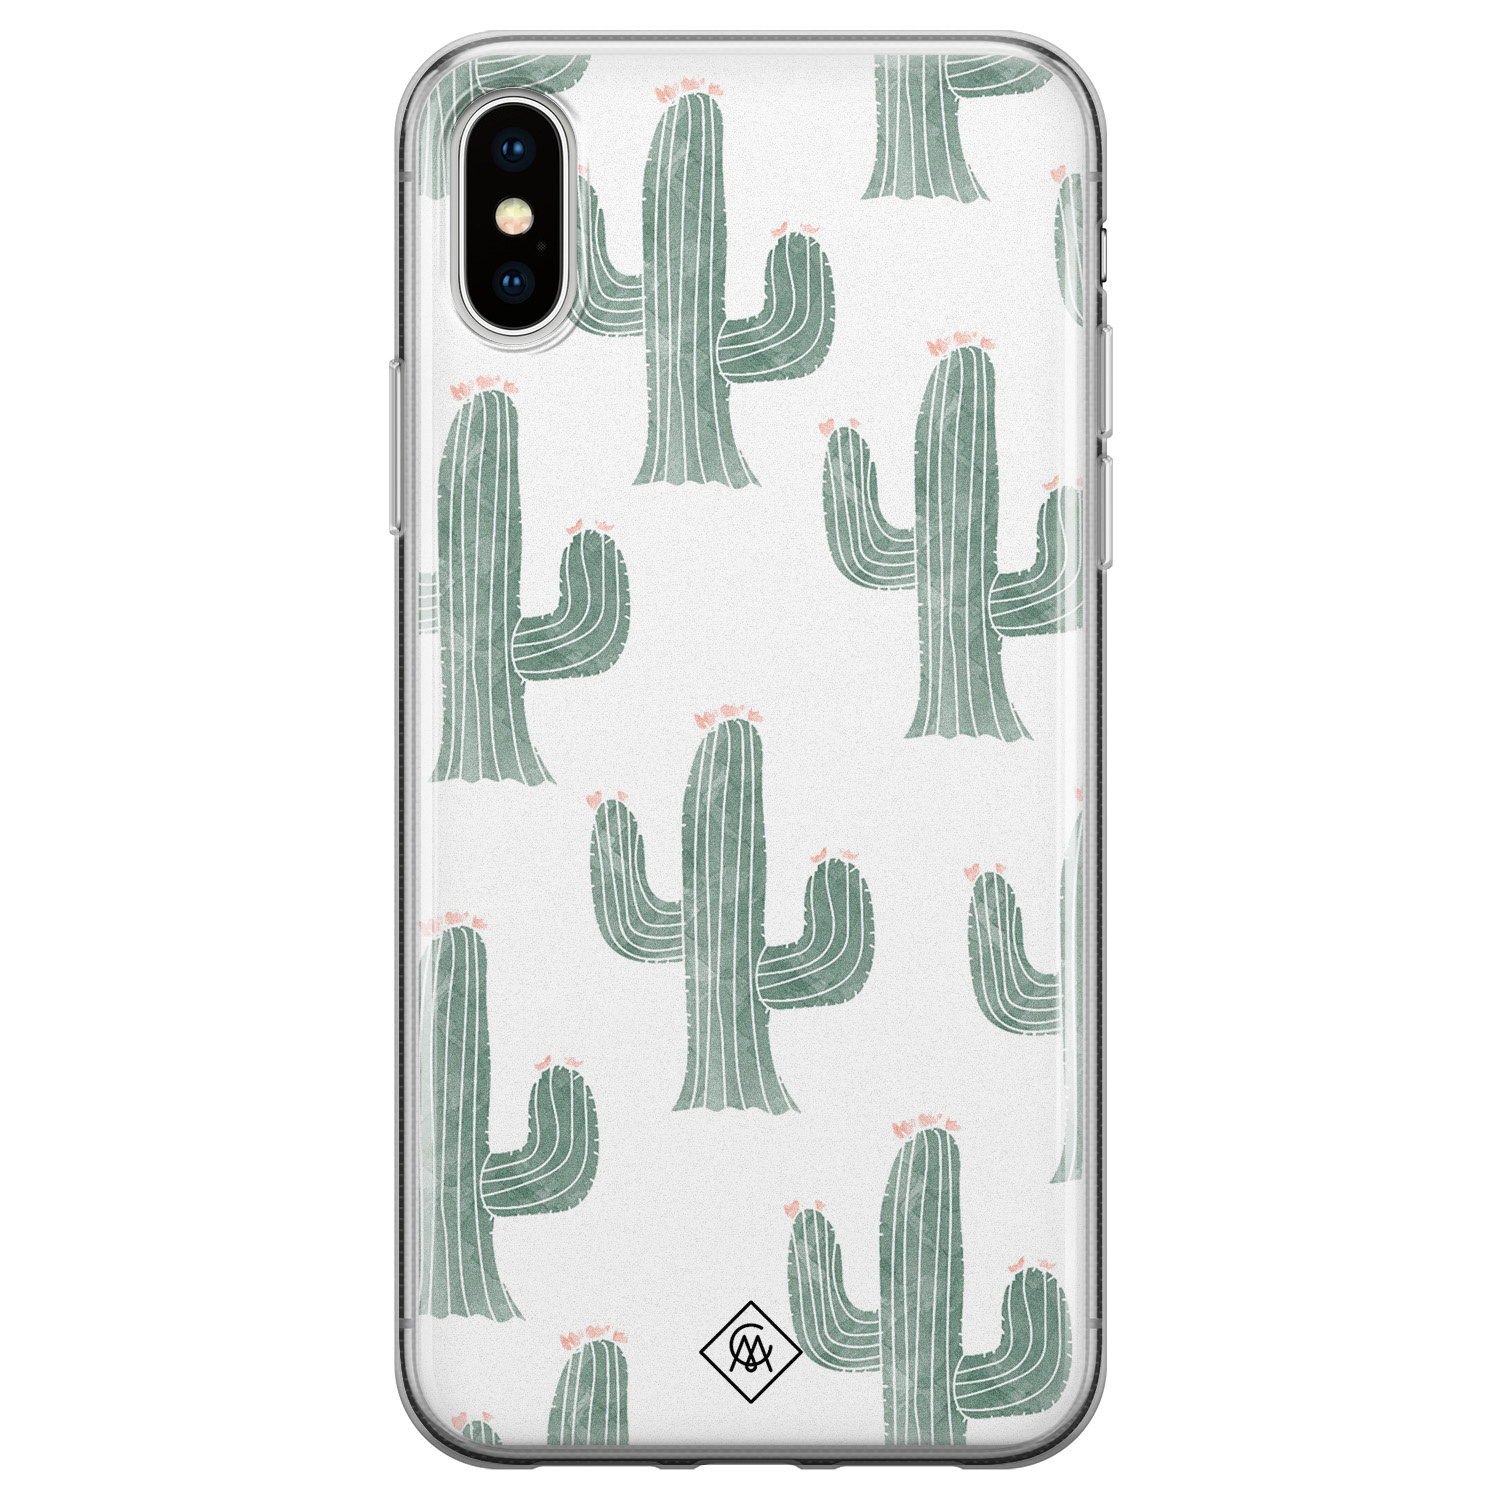 Moeras Voortdurende ga zo door iPhone X/XS siliconen telefoonhoesje - Cactus print - Casimoda.nl